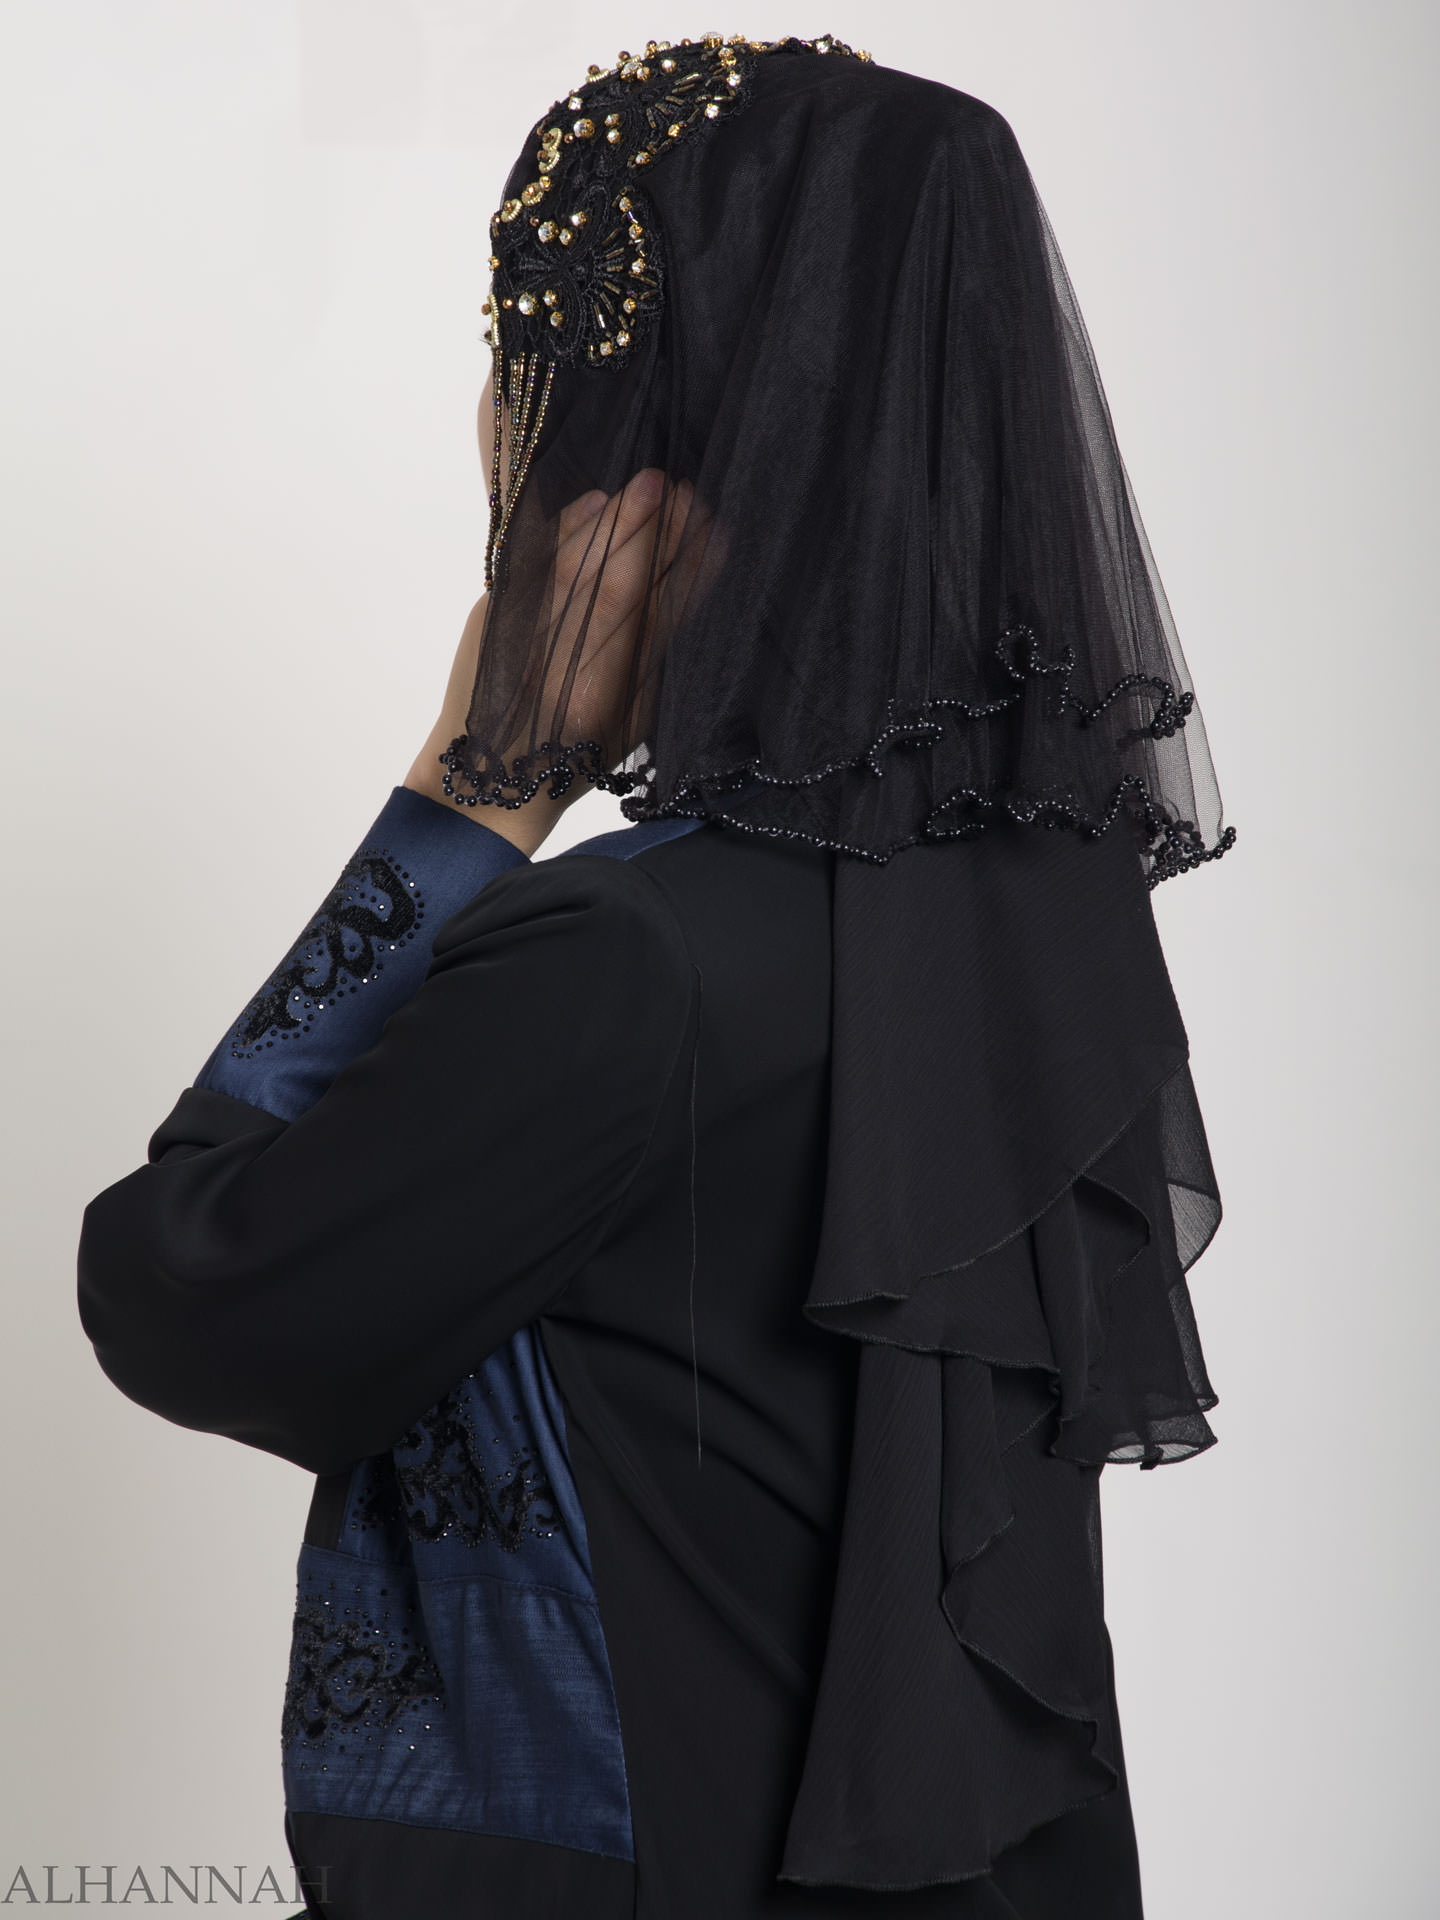 Black Pearled Bridal Hijab | hi2153 » Alhannah Islamic Clothing